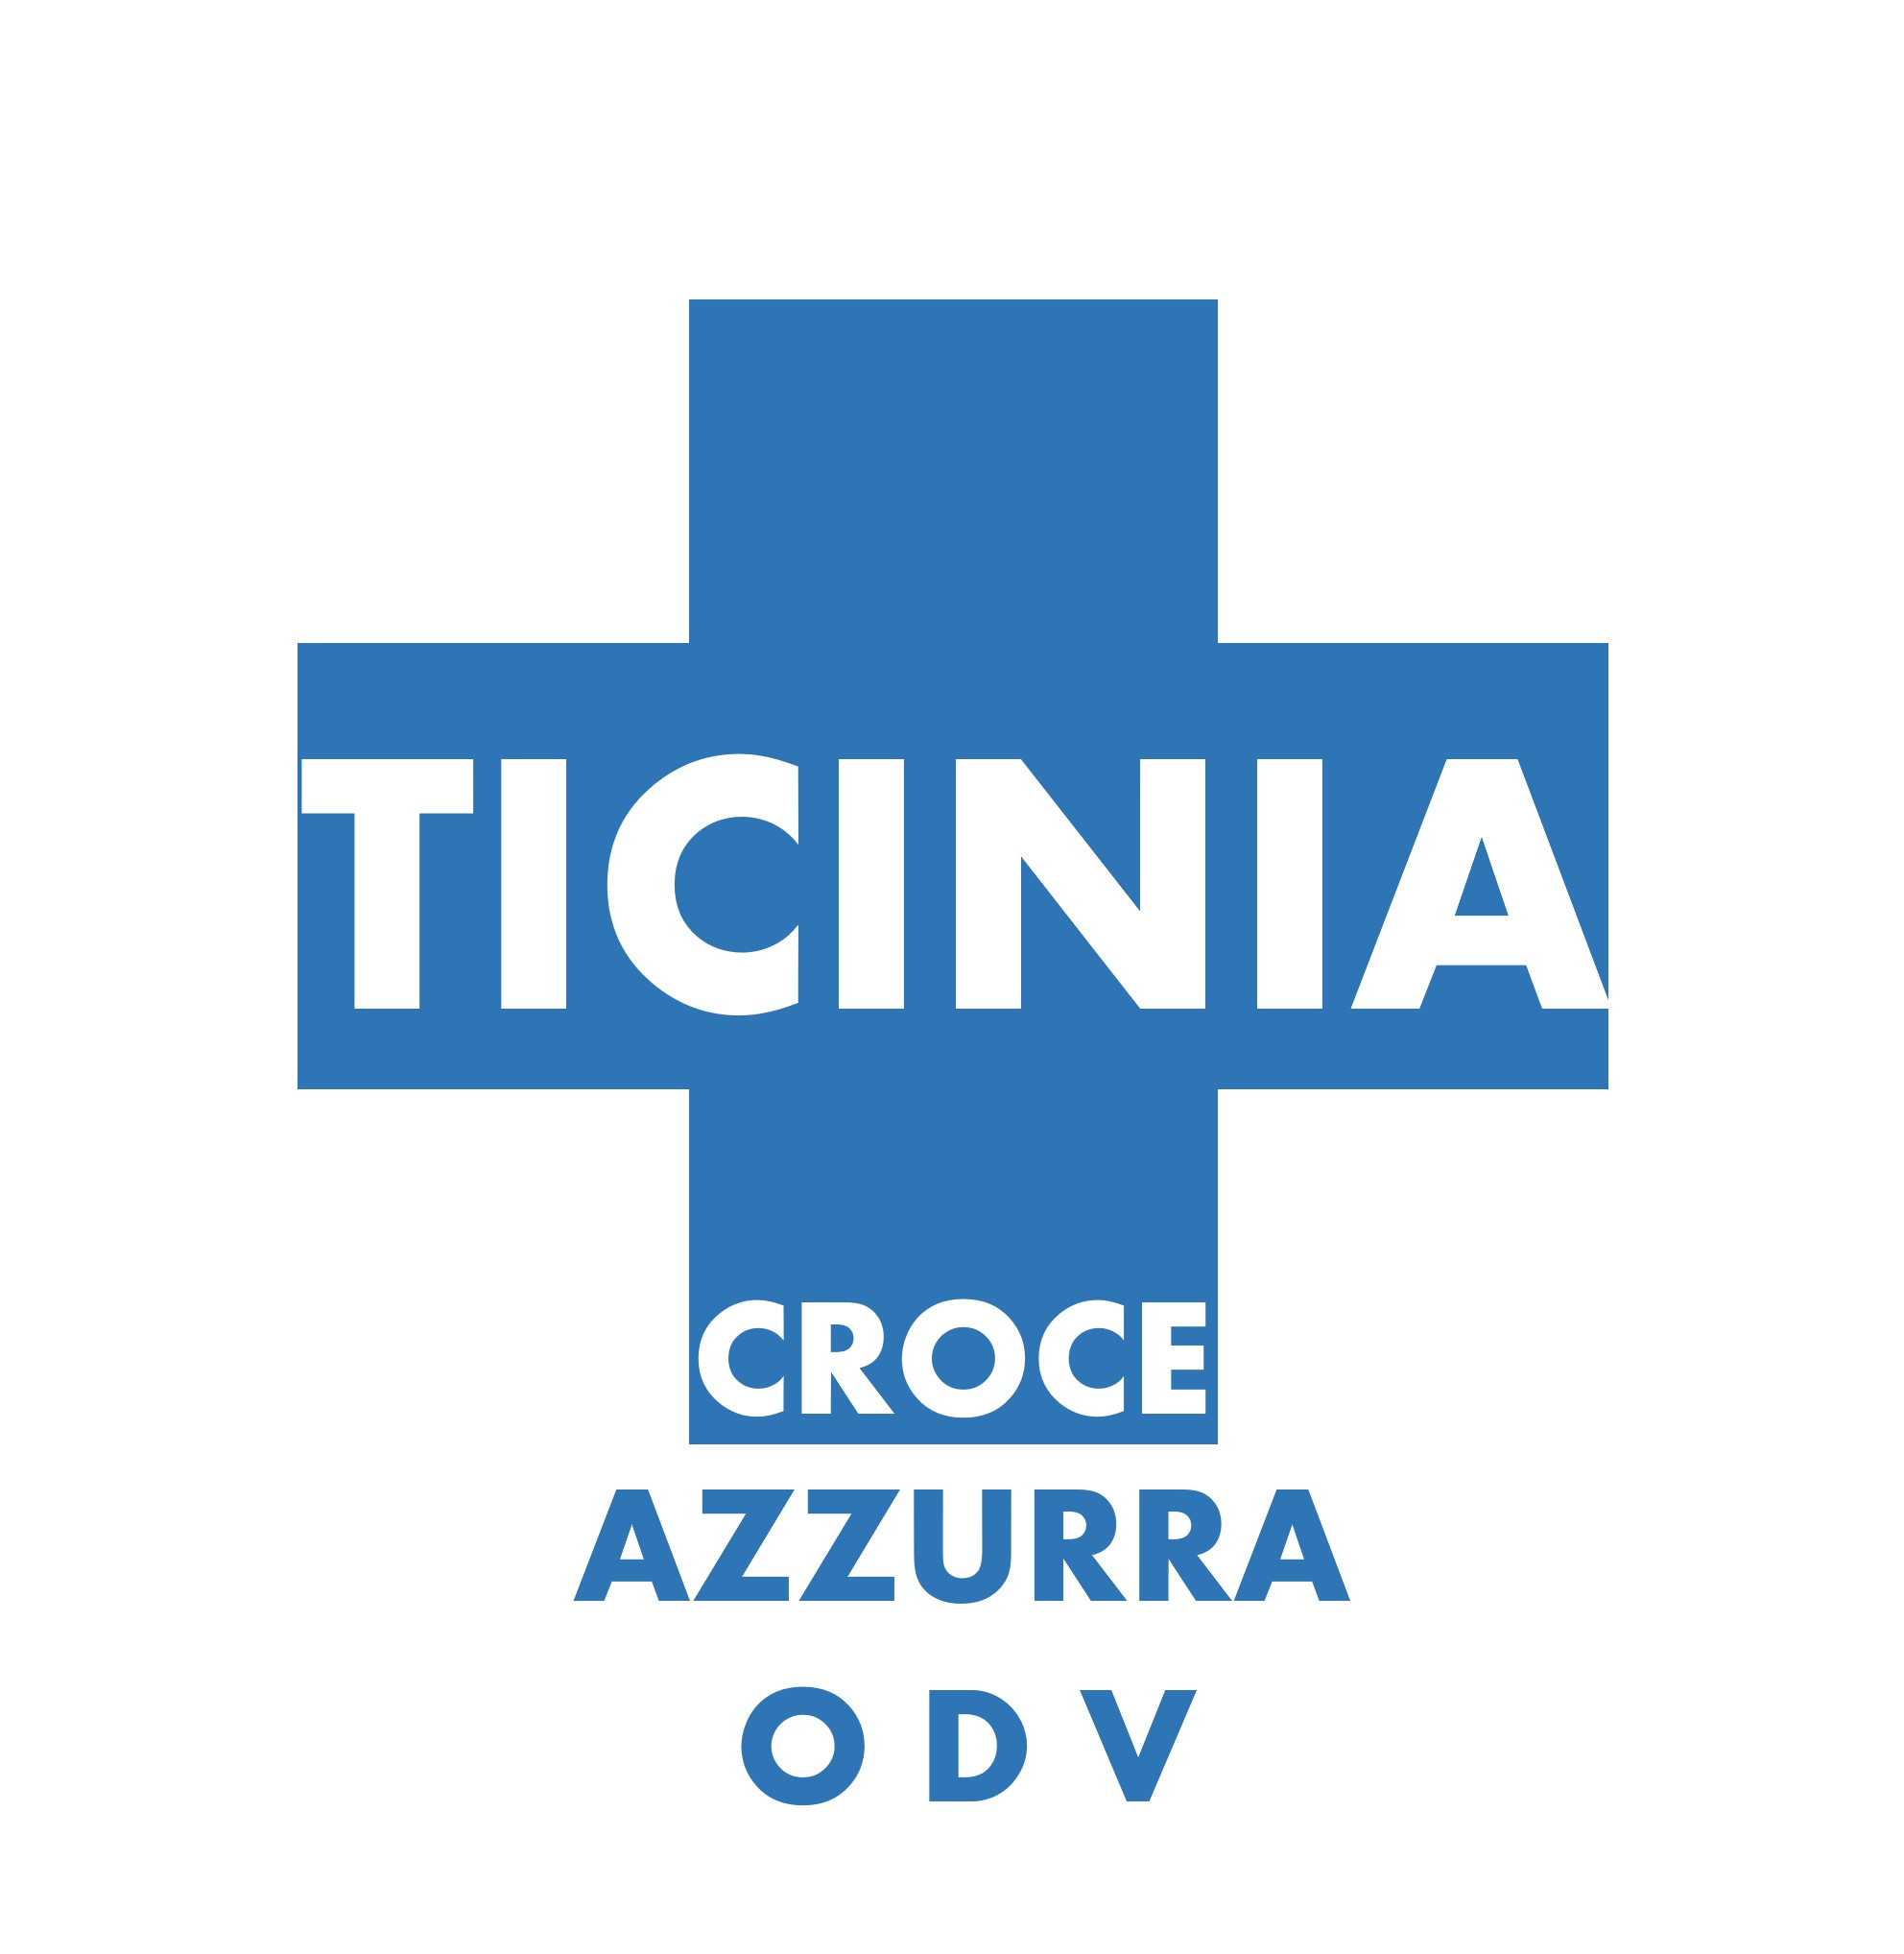 Archivio Storico Croce Azzurra Ticinia - Croce Azzurra Ticinia ODV - ???? - I Festeggiamenti